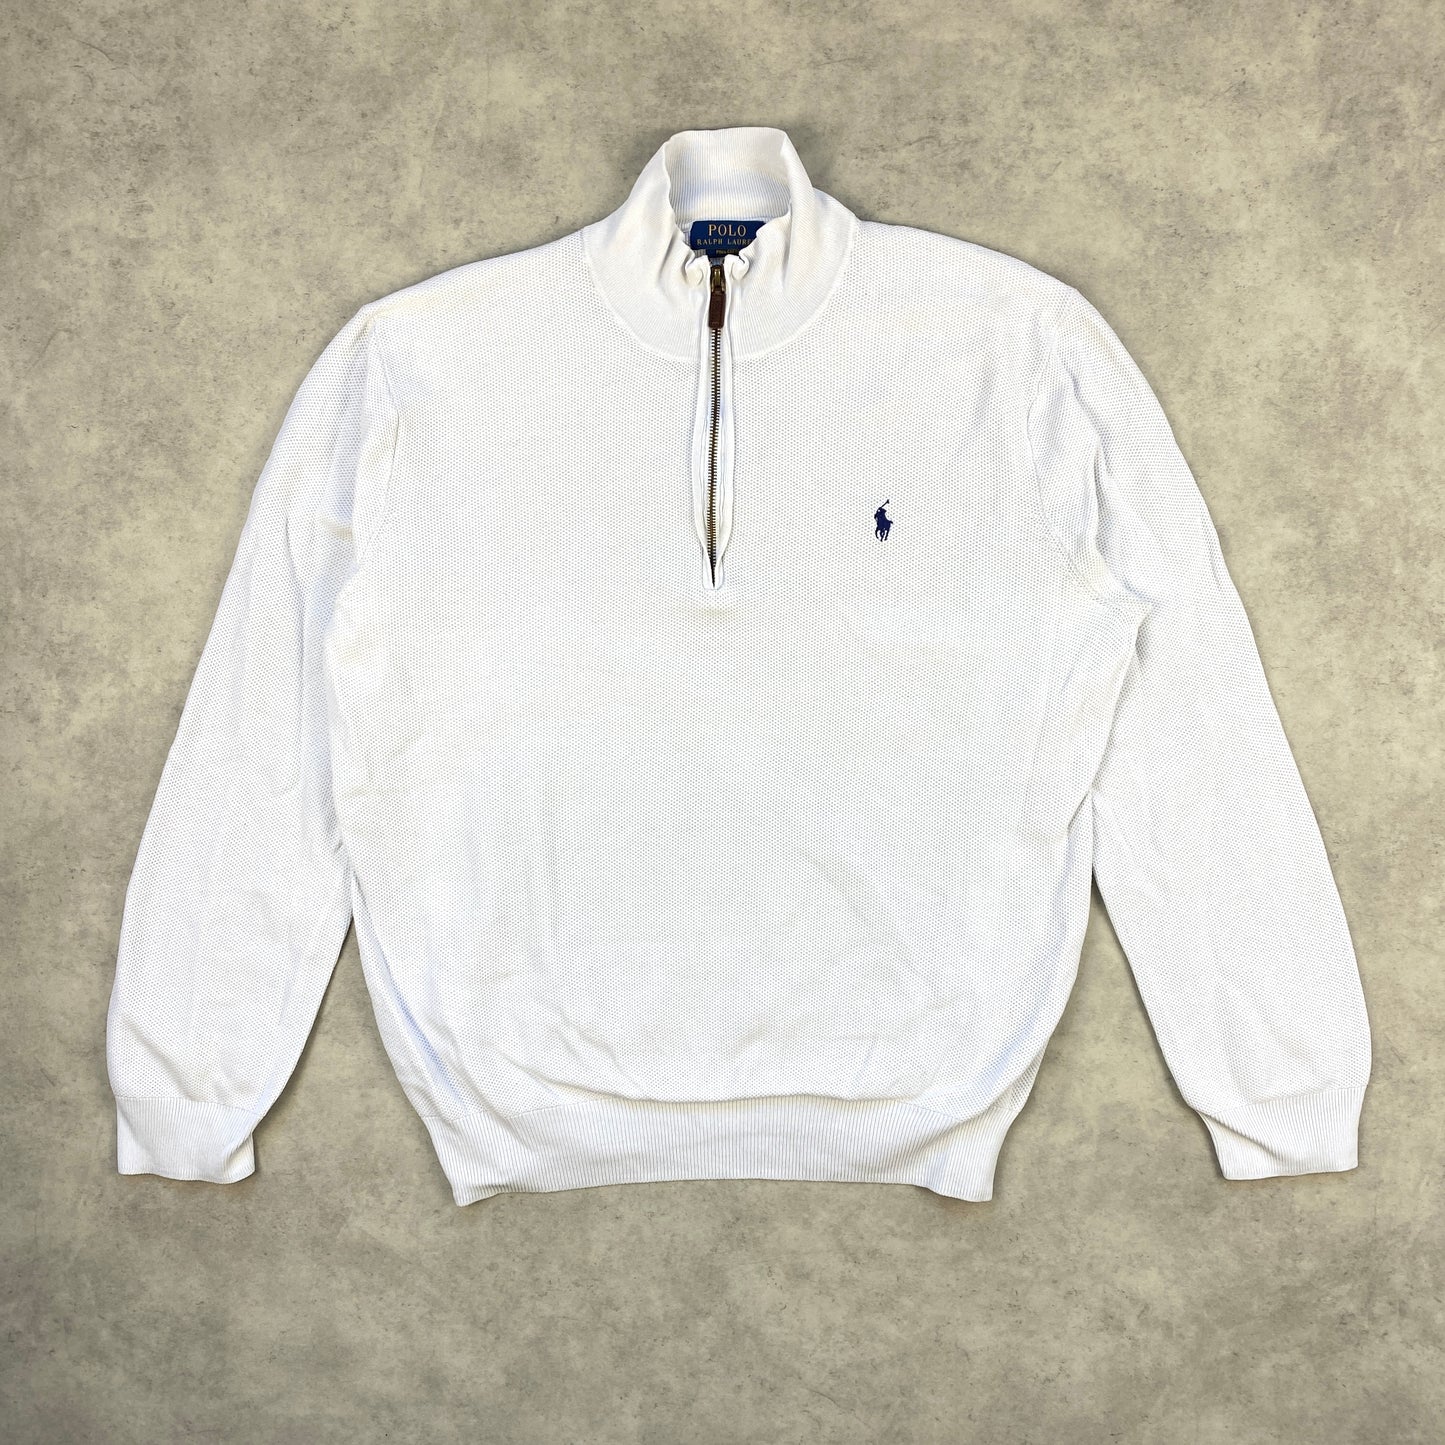 Polo Ralph Lauren 1/4 zip sweater (L)